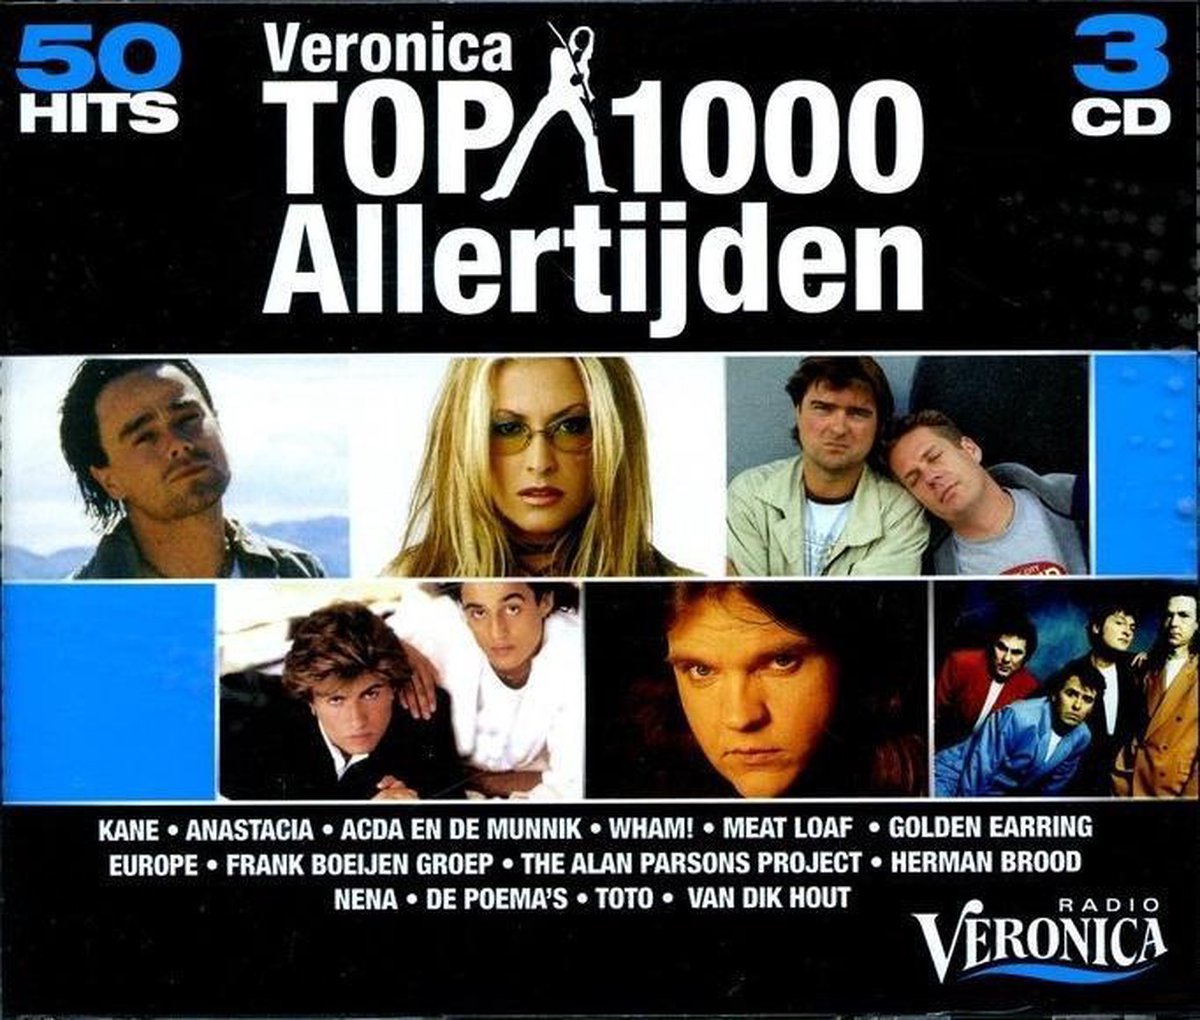 Veronica top 1000 allertijden (2008), Radio Veronica | CD (album) | Muziek  | bol.com